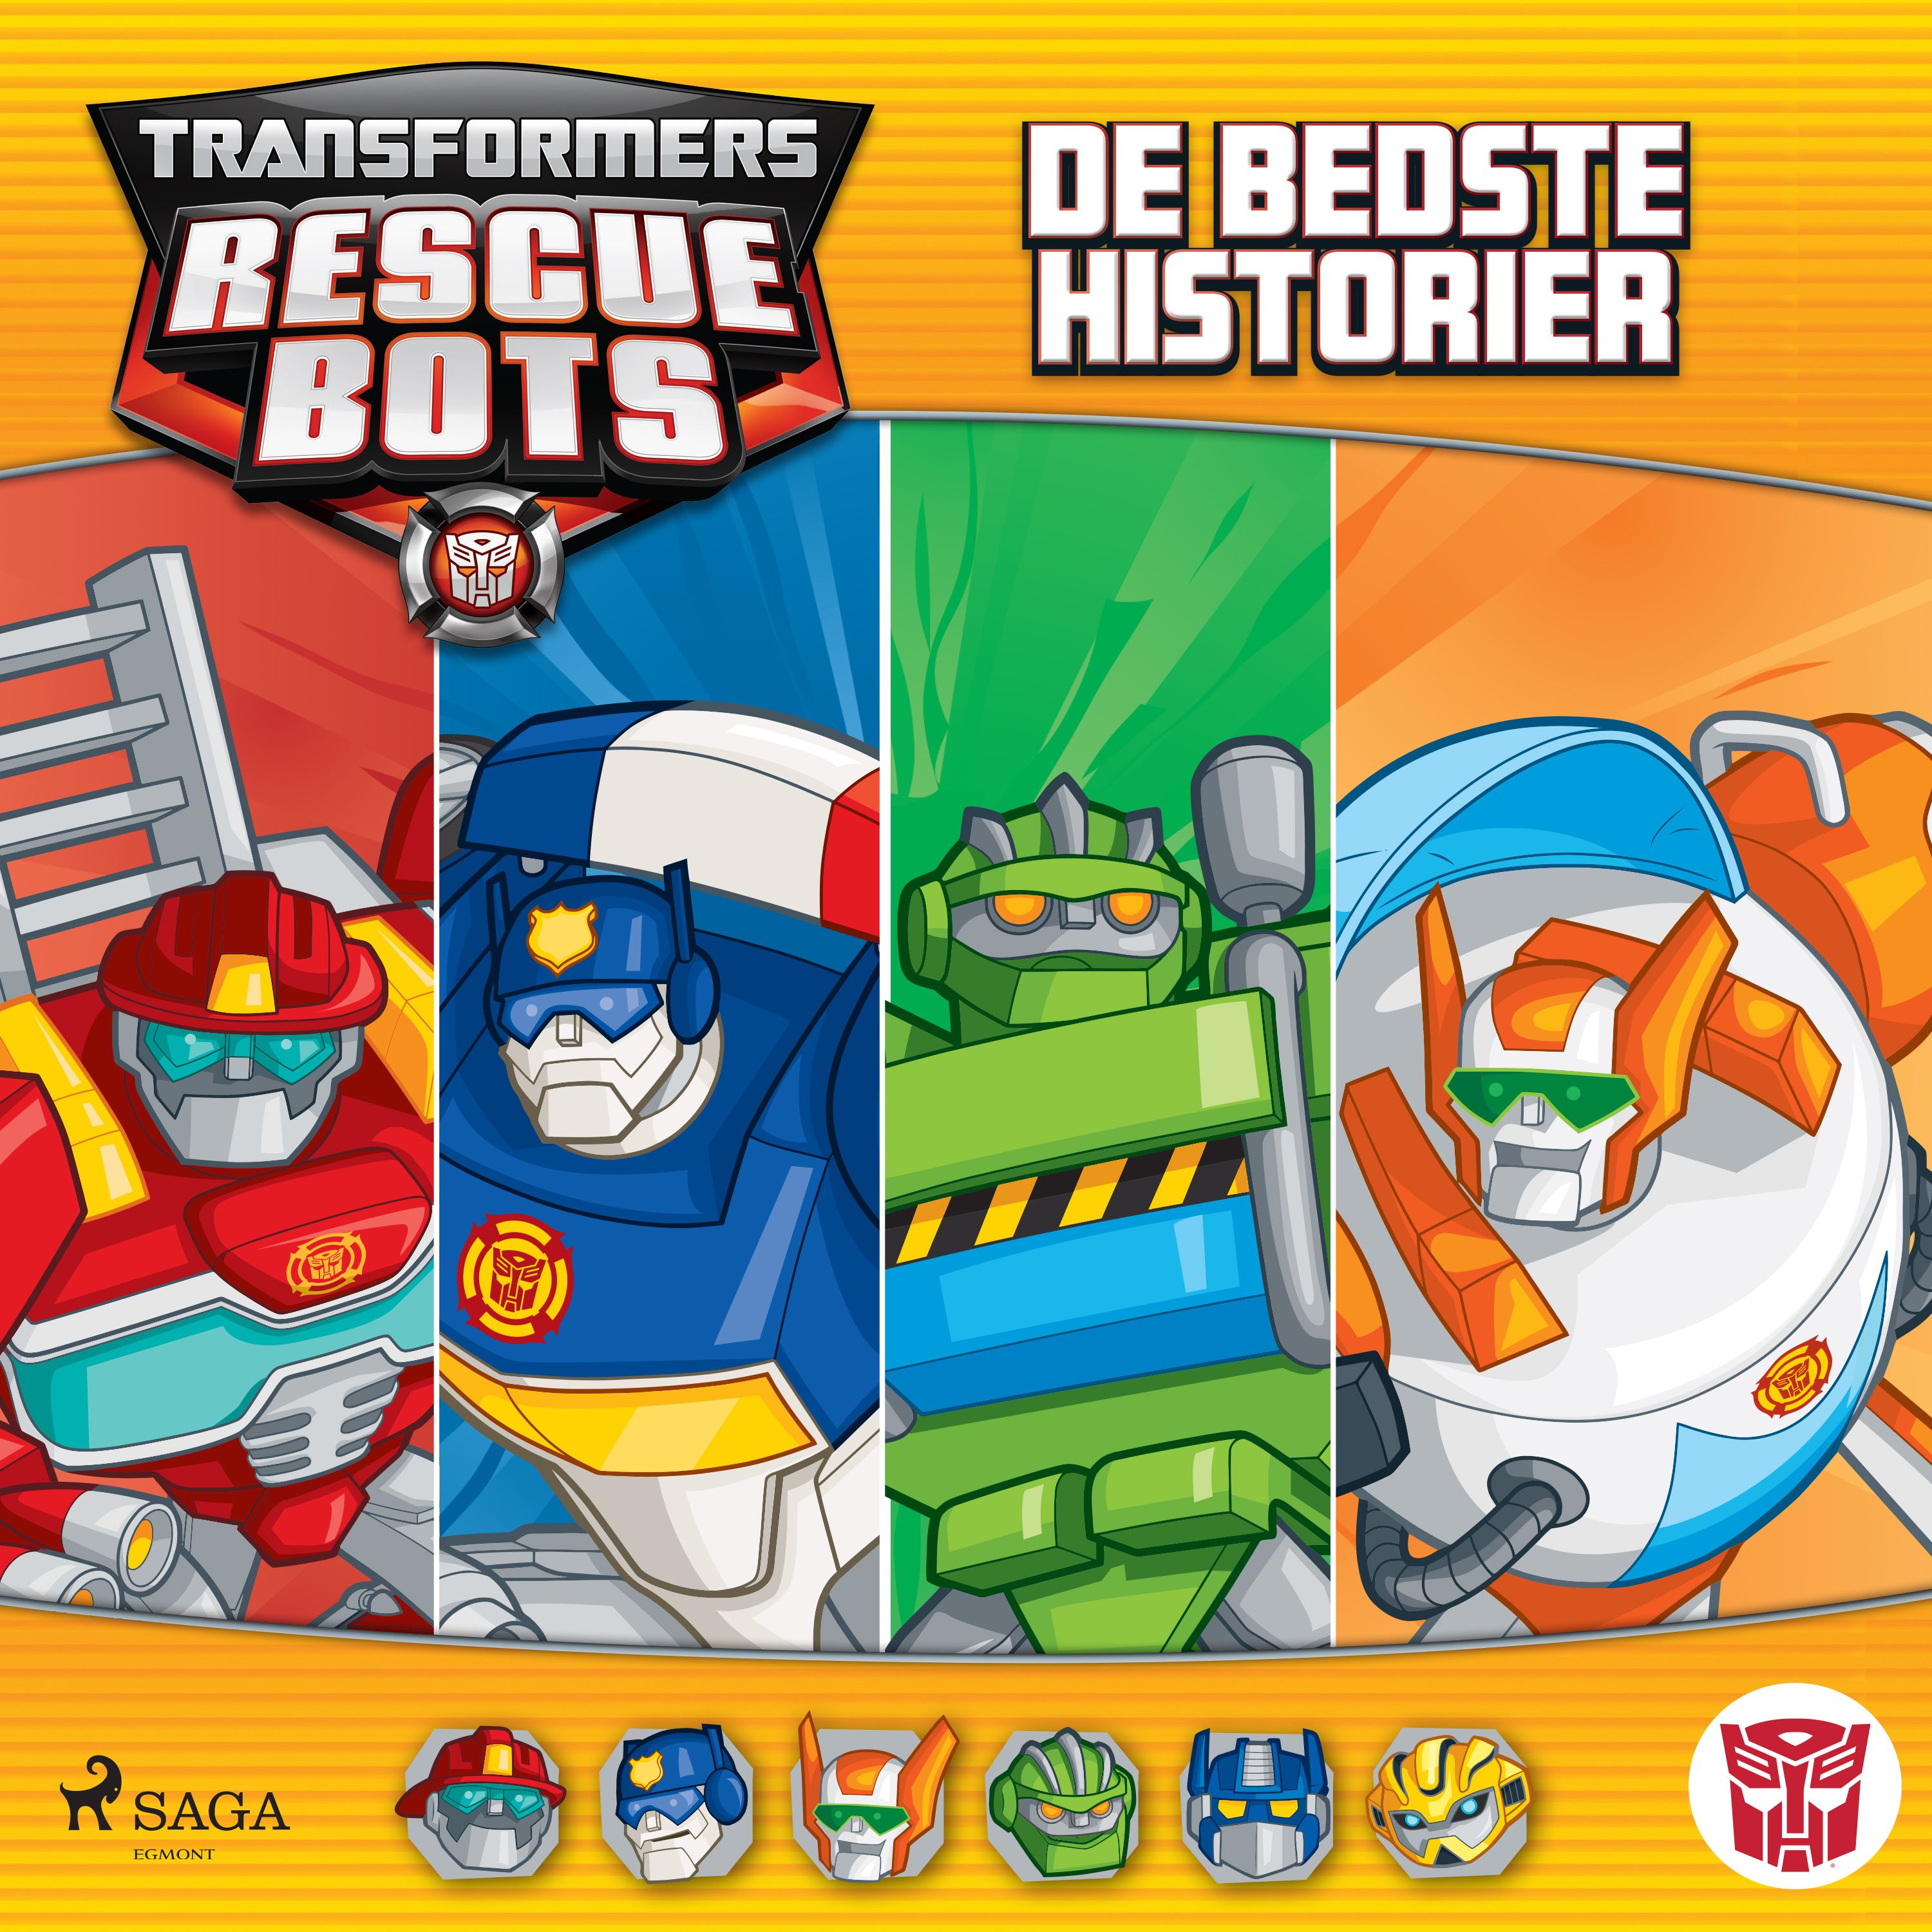 Transformers - Rescue Bots - De bedste historier, ljudbok av Maya Mackowiak Elson, Lucy Rosen, John Sazaklis, Brandon T. Snider